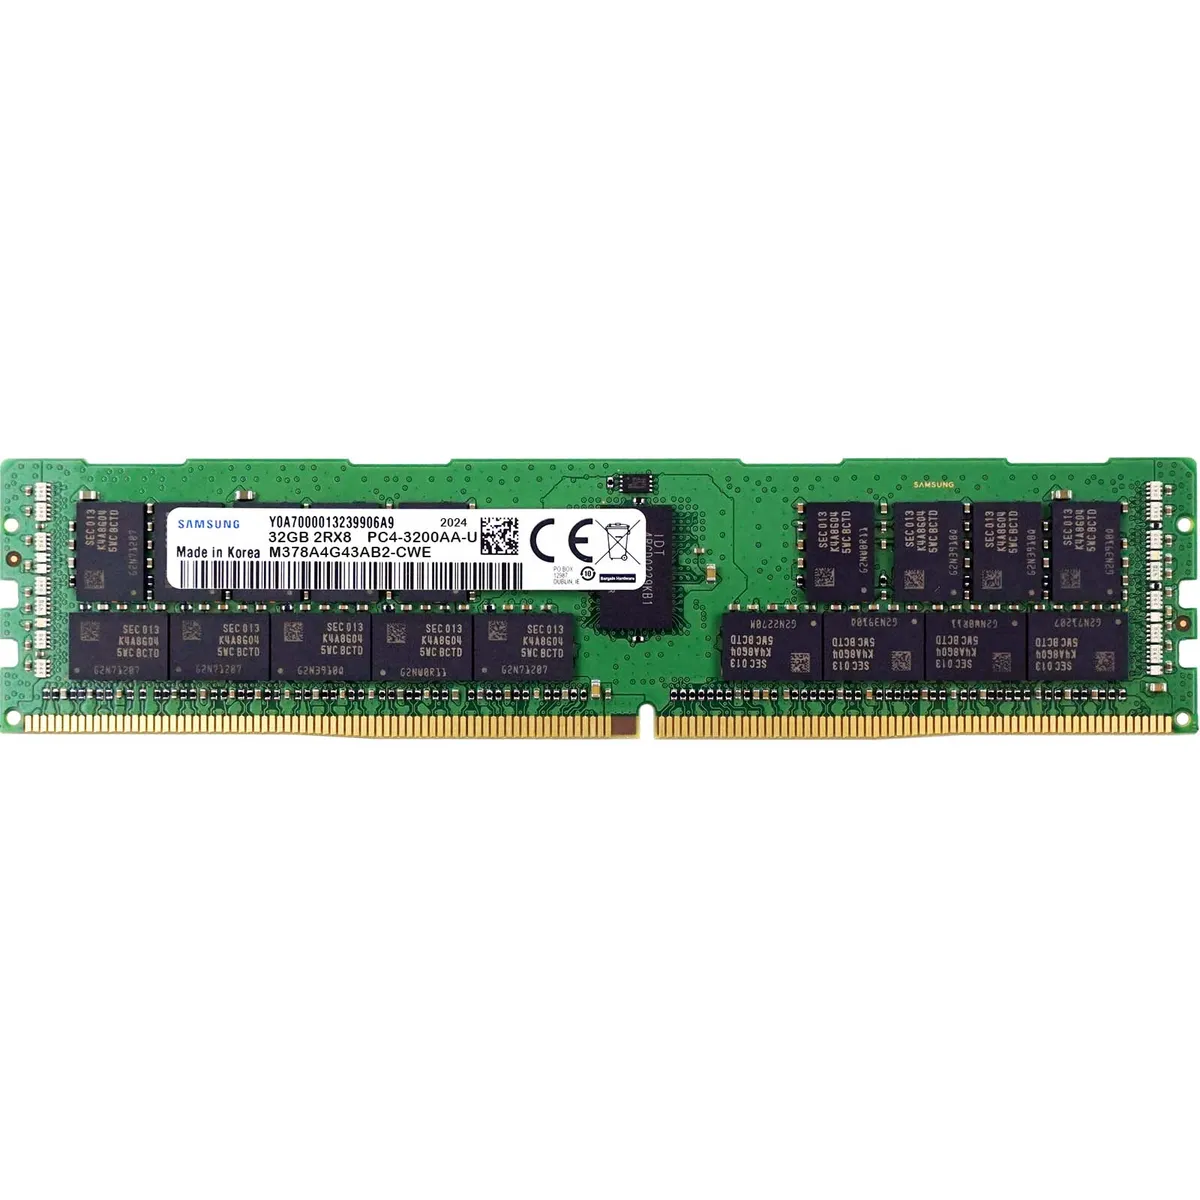 Samsung (M378A4G43AB2-CWE) - 32GB PC4-25600AA-U (2RX8, DDR4-3200MHz) RAM